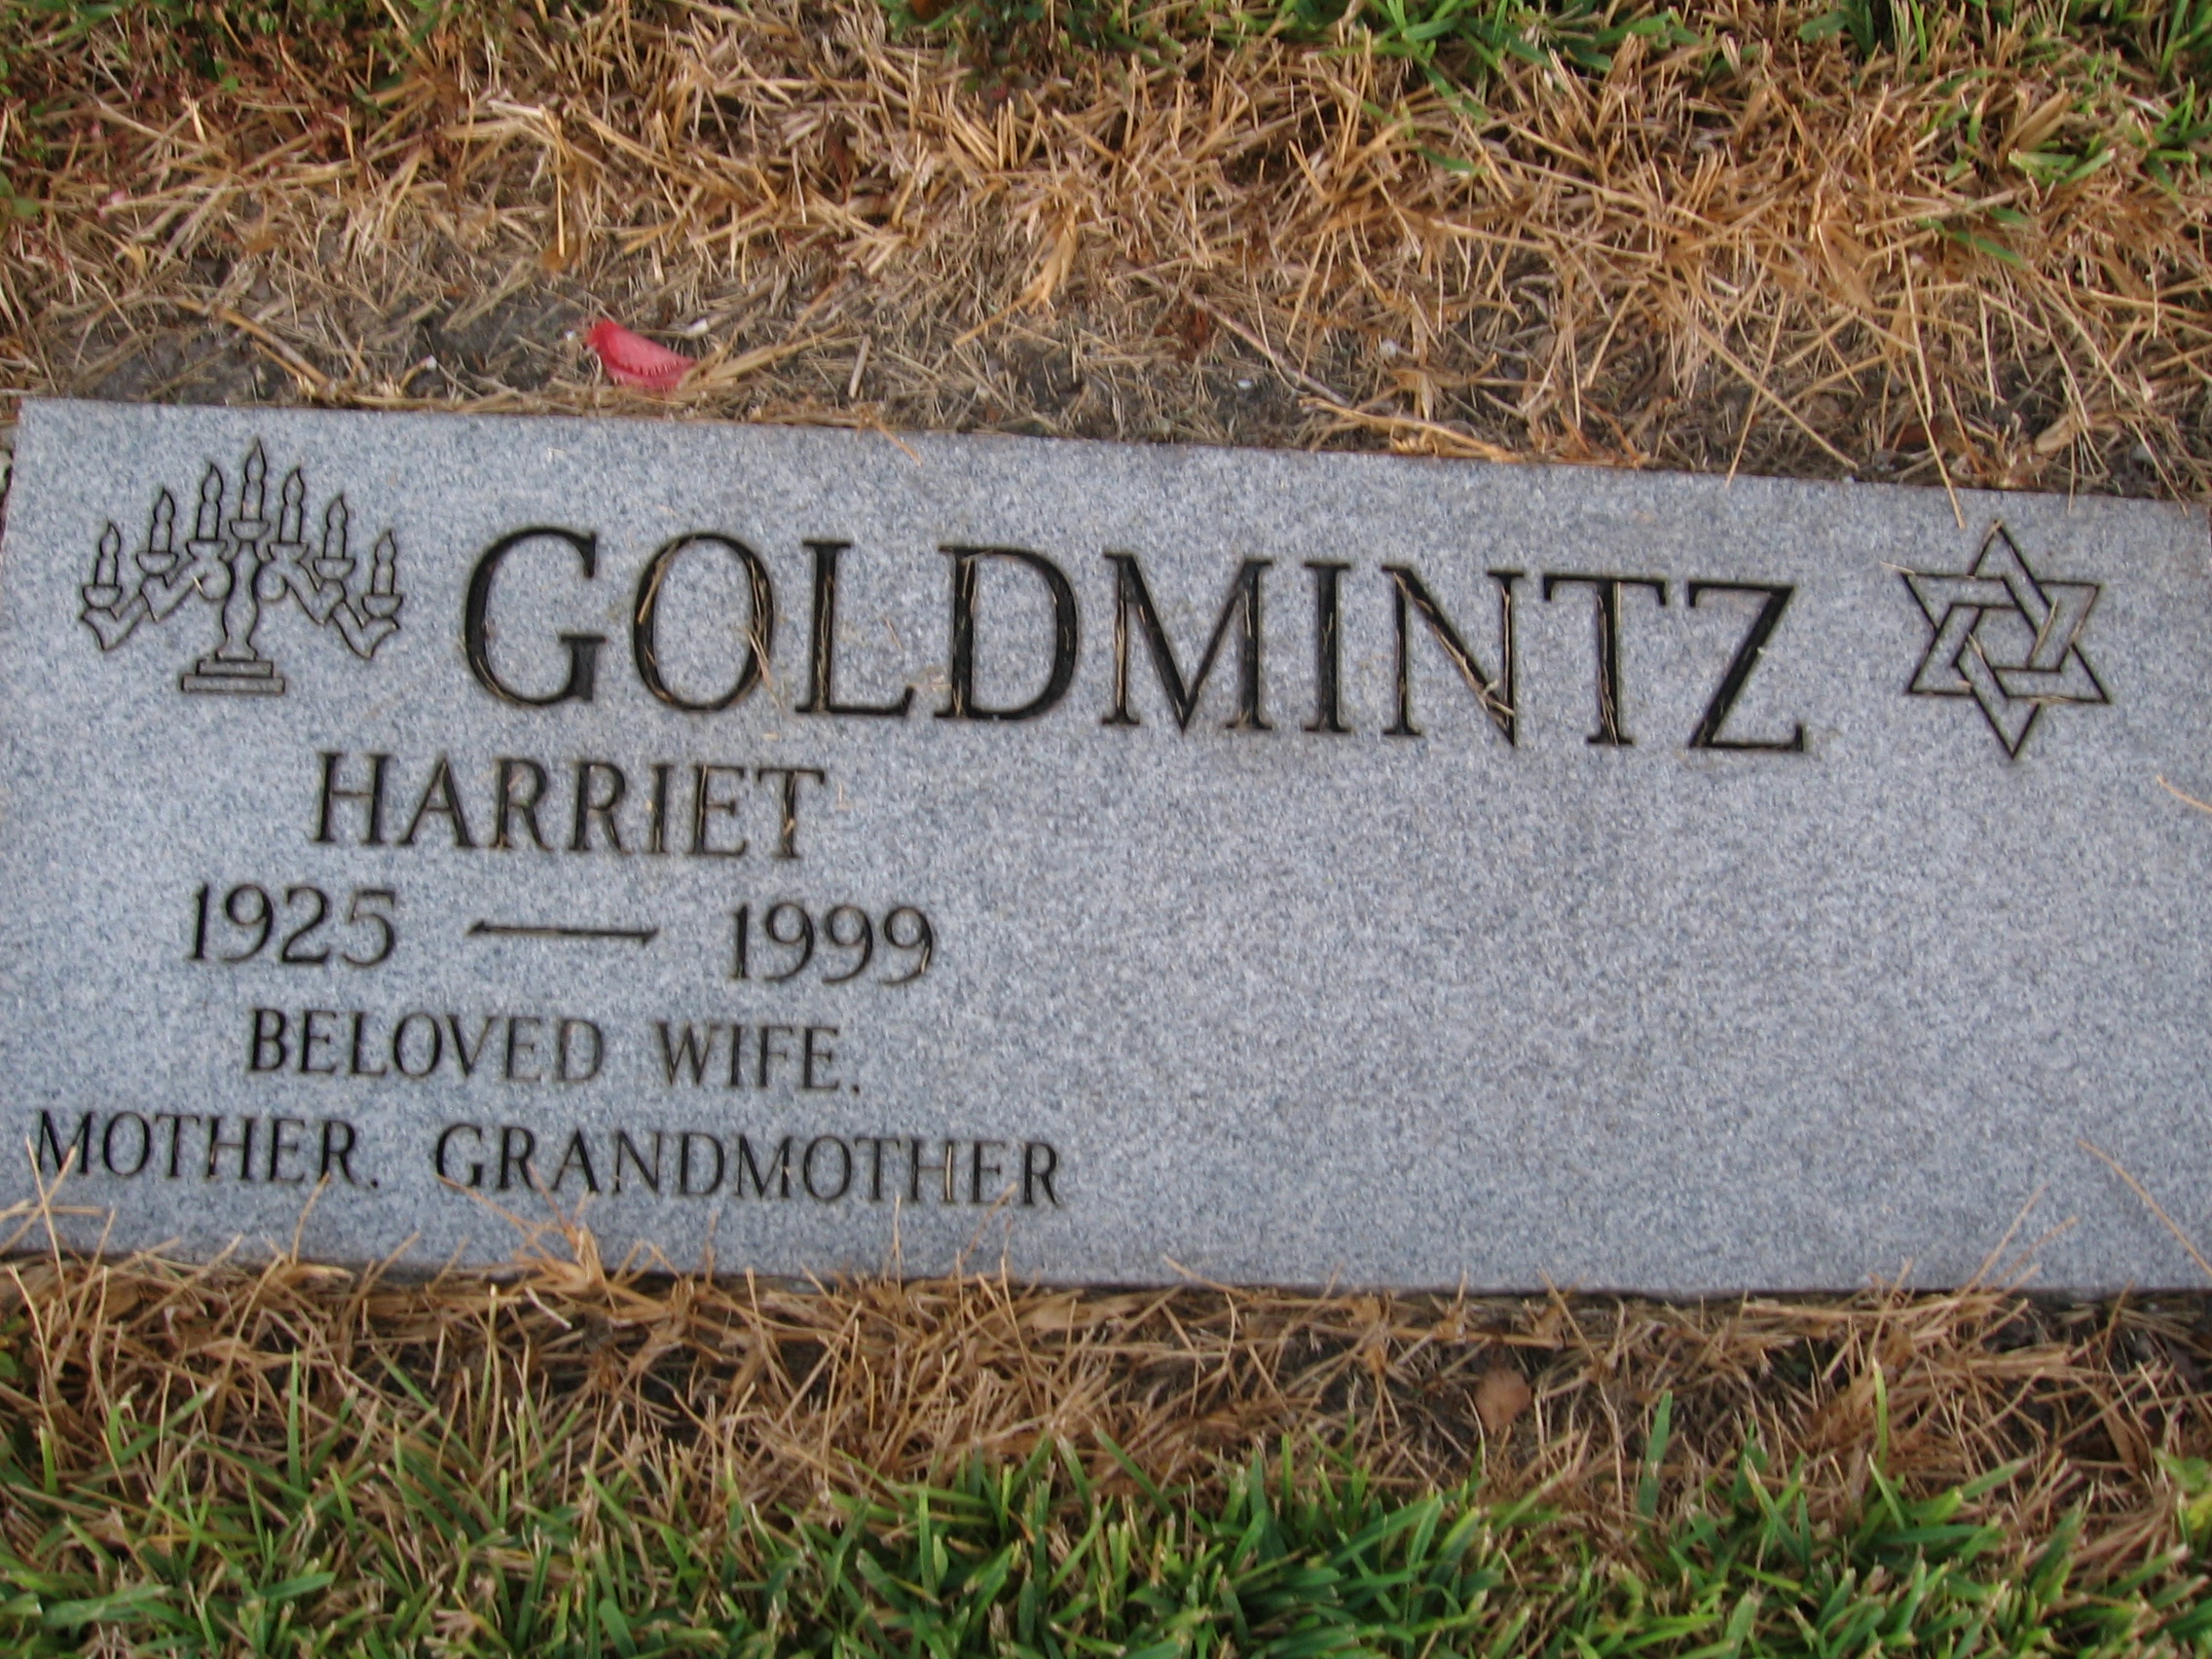 Harriet Goldmintz